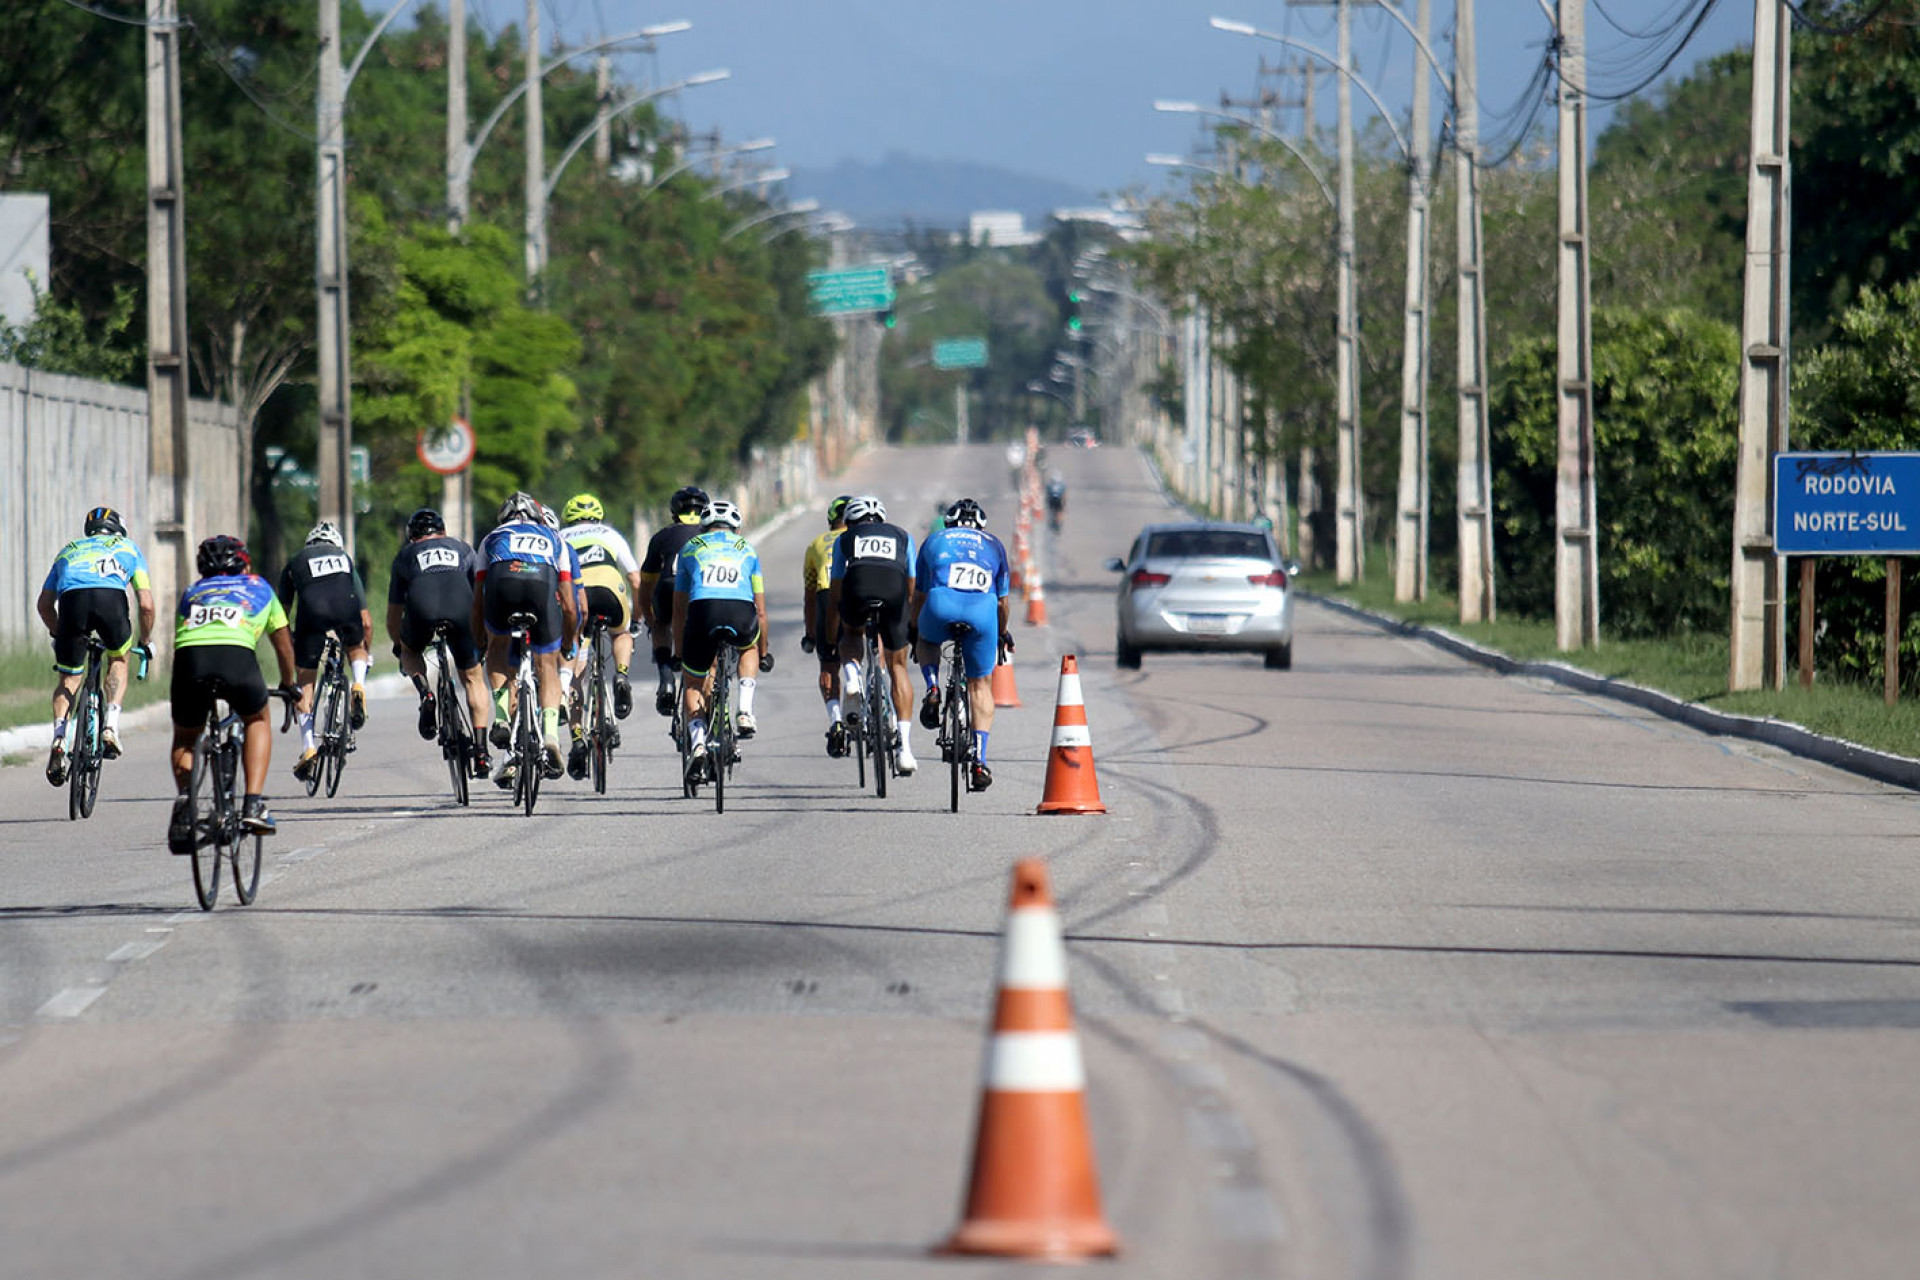 Campeonato Estadual de Ciclismo é realizado na Rodovia Norte-Sul - Foto: Divulgação